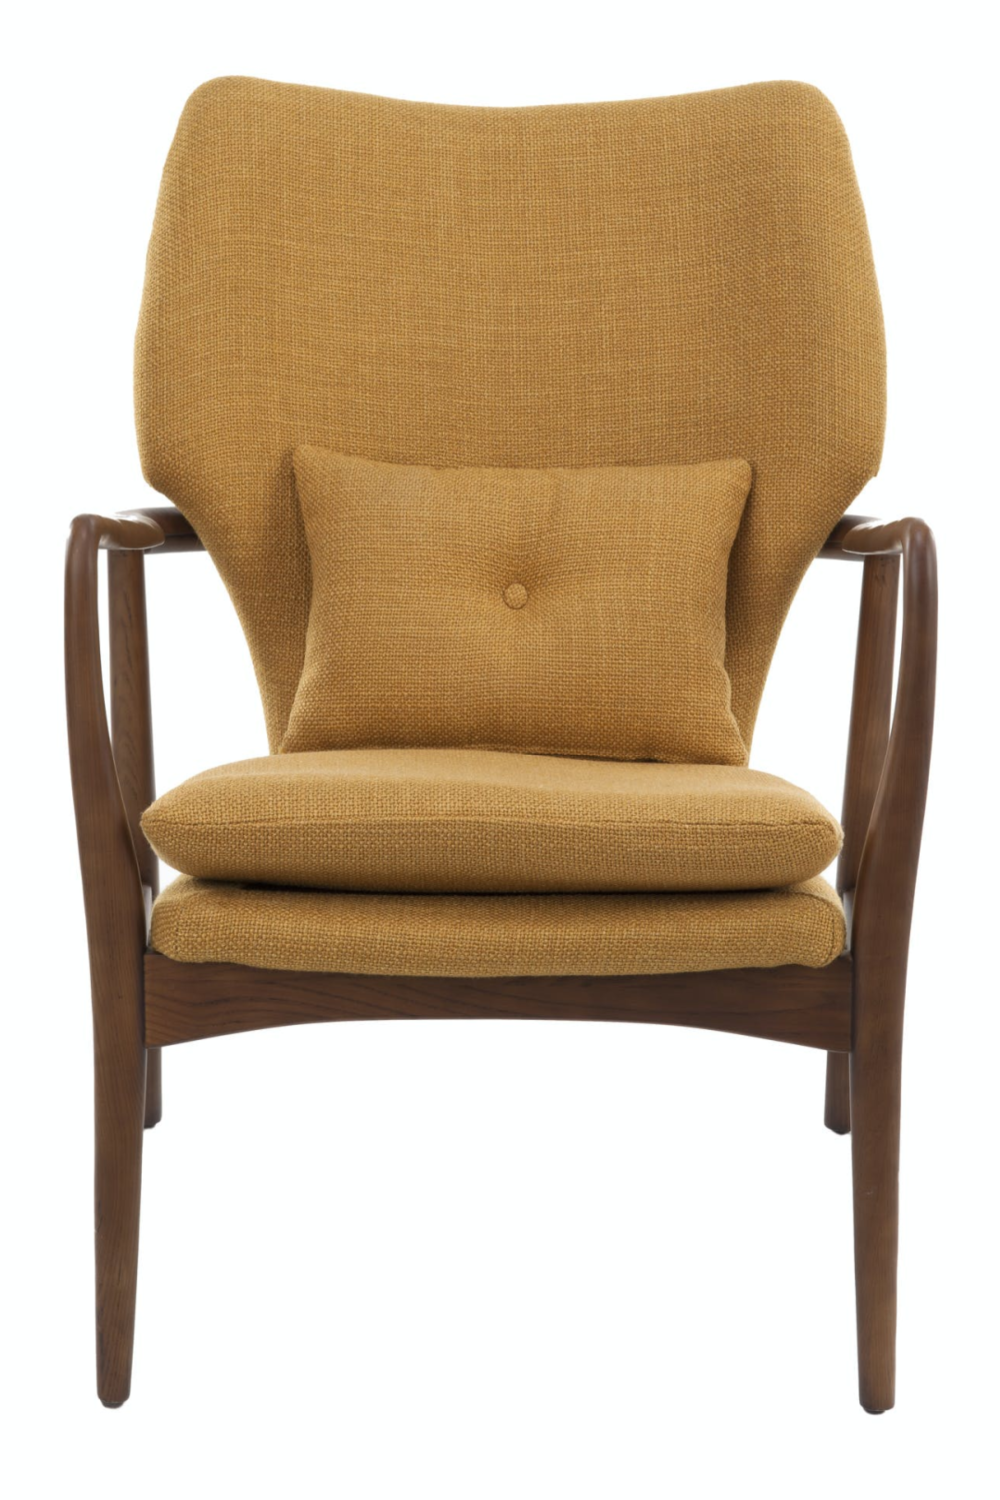 stijfheid biologisch premie Accent Chair | Pols Potten | Dutch Furniture